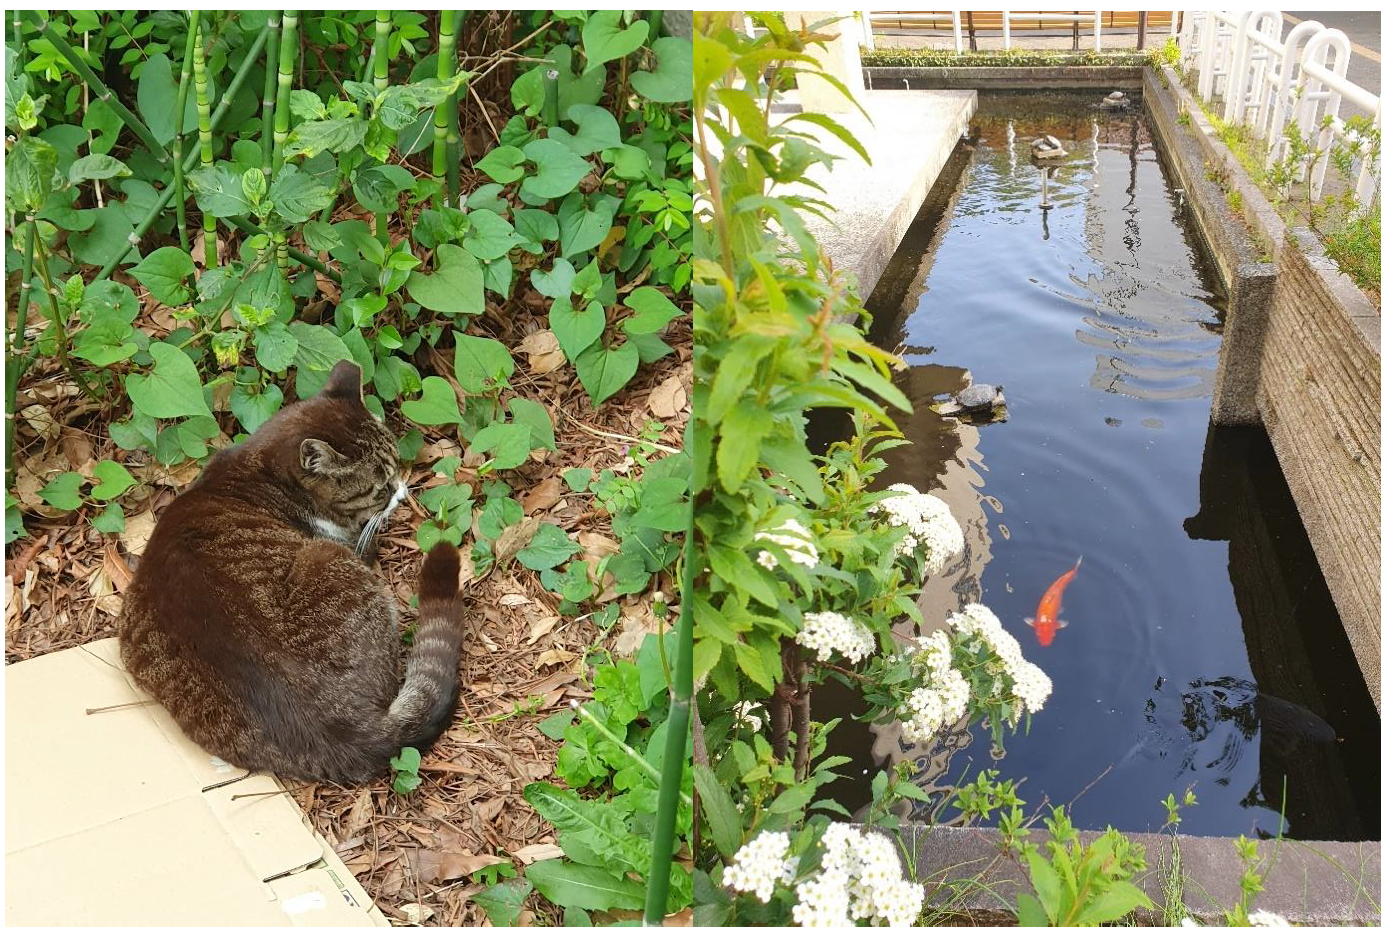 Todelt bilde, det ene viser en katt i grønne omgivelser, det andre viser fisk i en dam